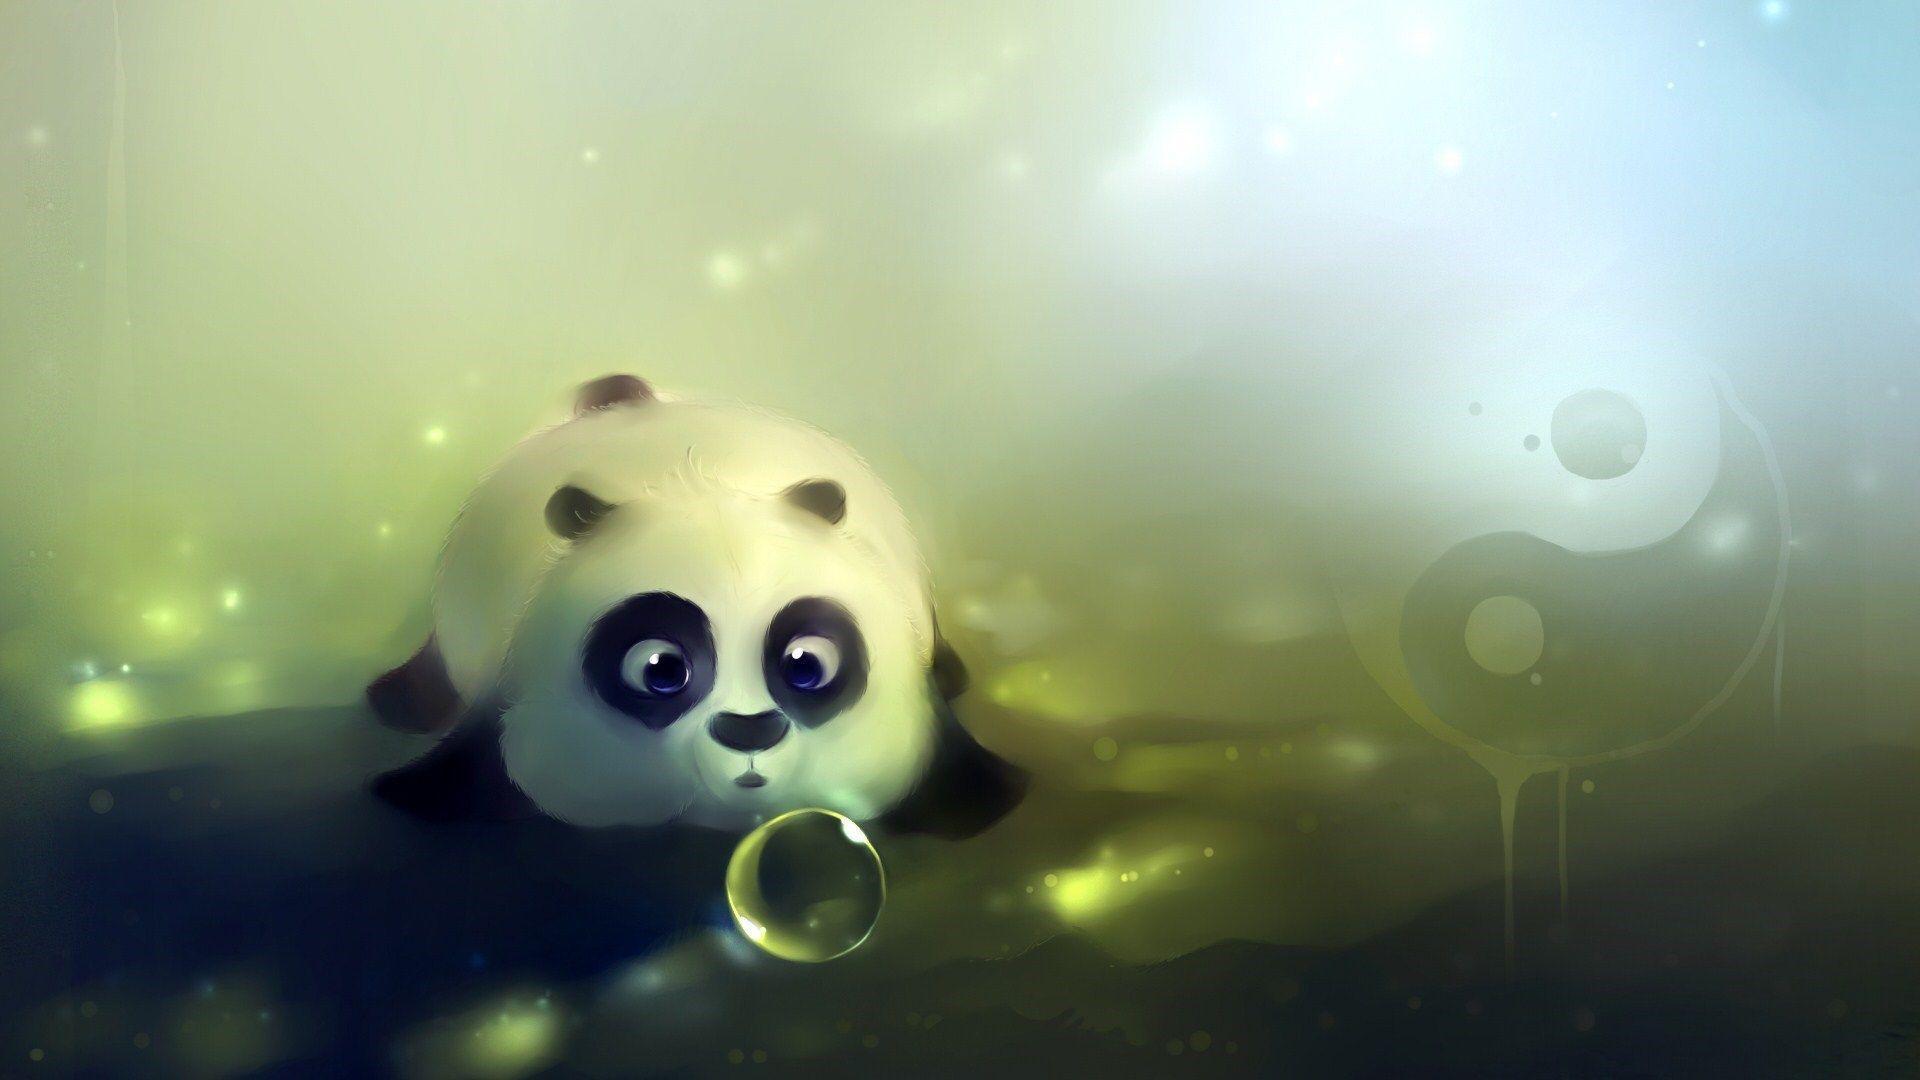 Cute Panda Bear Artwork HD Wallpaper